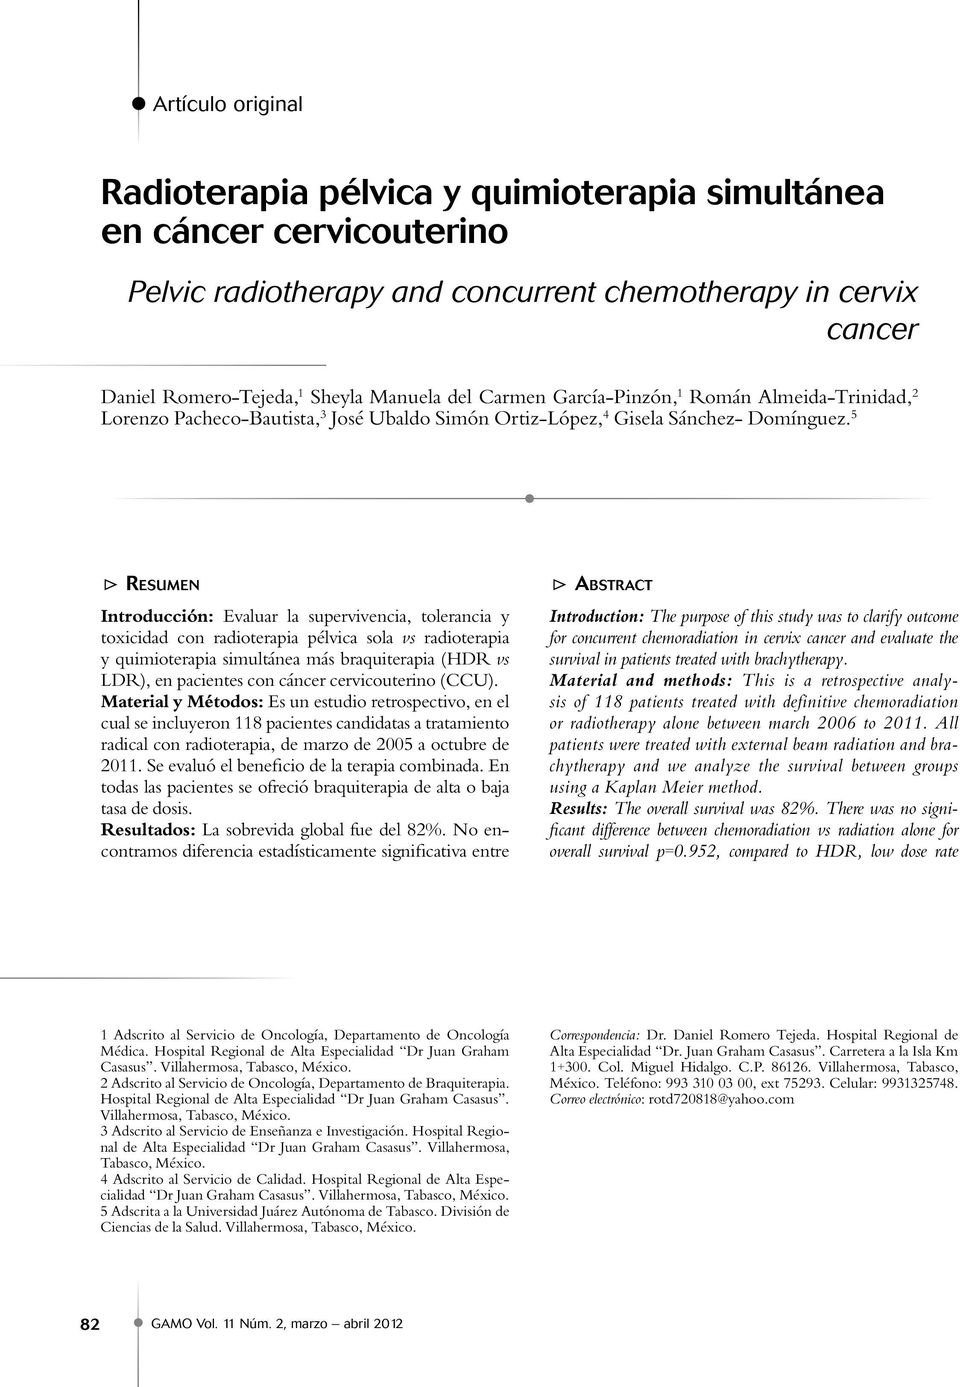 5 TTResumen Introducción: Evaluar la supervivencia, tolerancia y toxicidad con radioterapia pélvica sola vs radioterapia y quimioterapia simultánea más braquiterapia (HDR vs LDR), en pacientes con